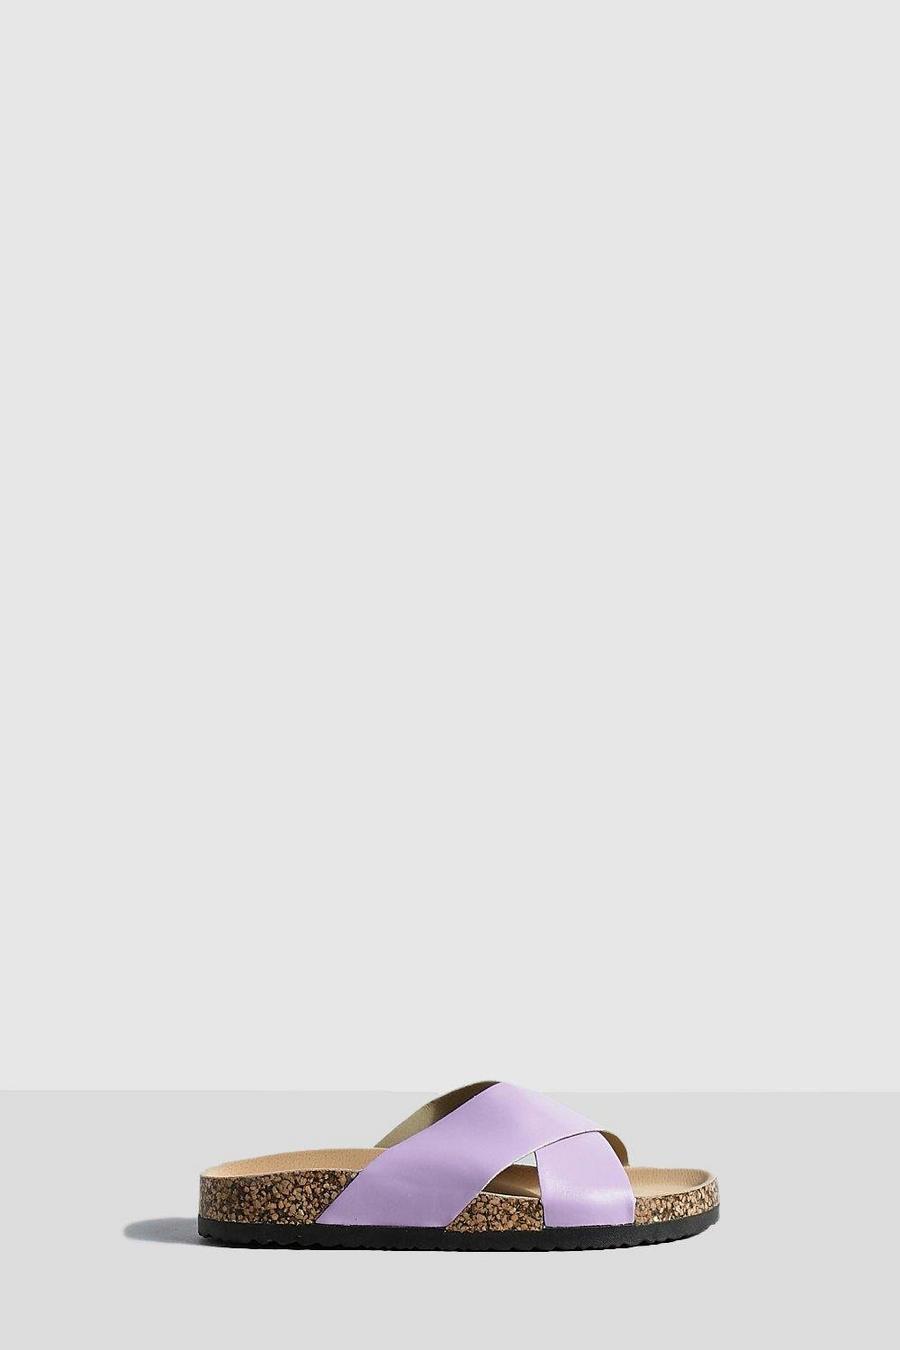 Ciabatte con fascette incrociate sul plantare, Lilac viola